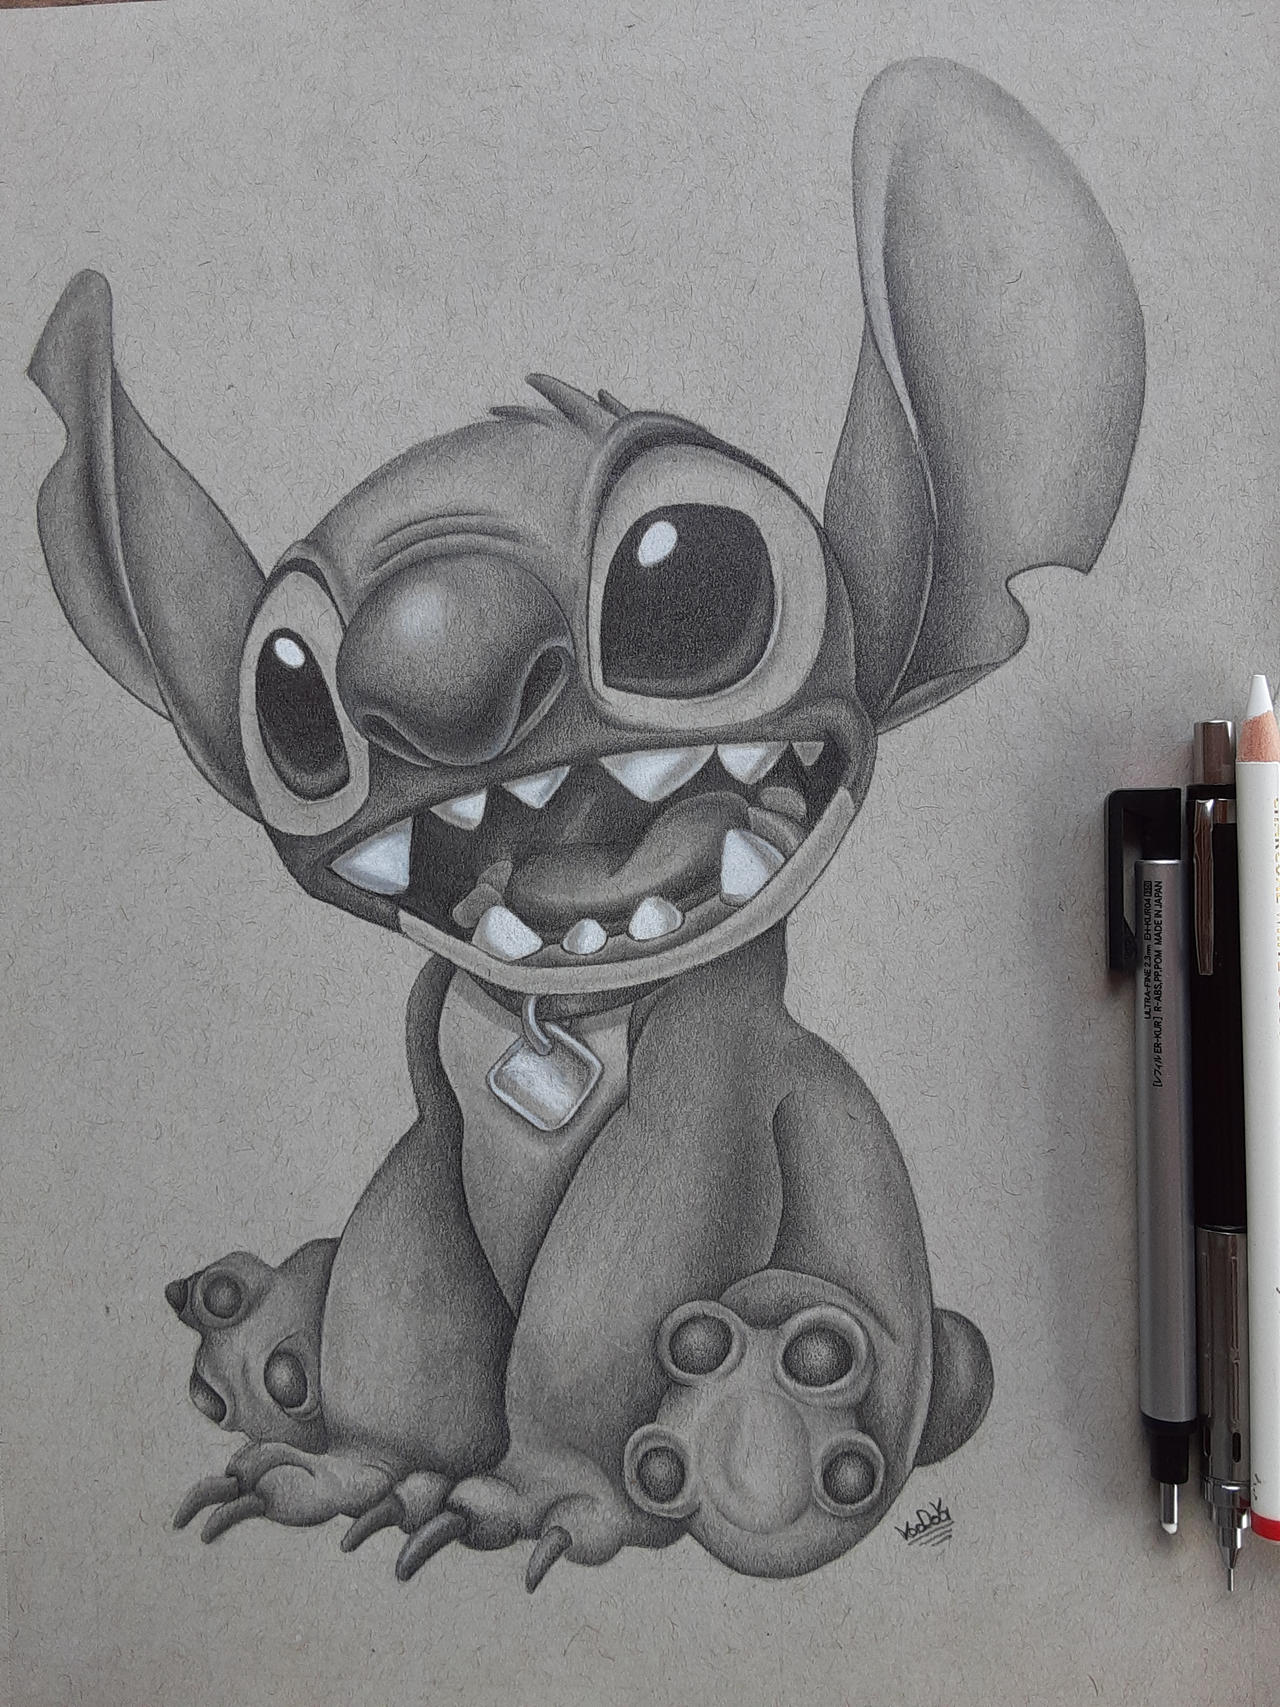 My Stitch fanart! : r/drawing